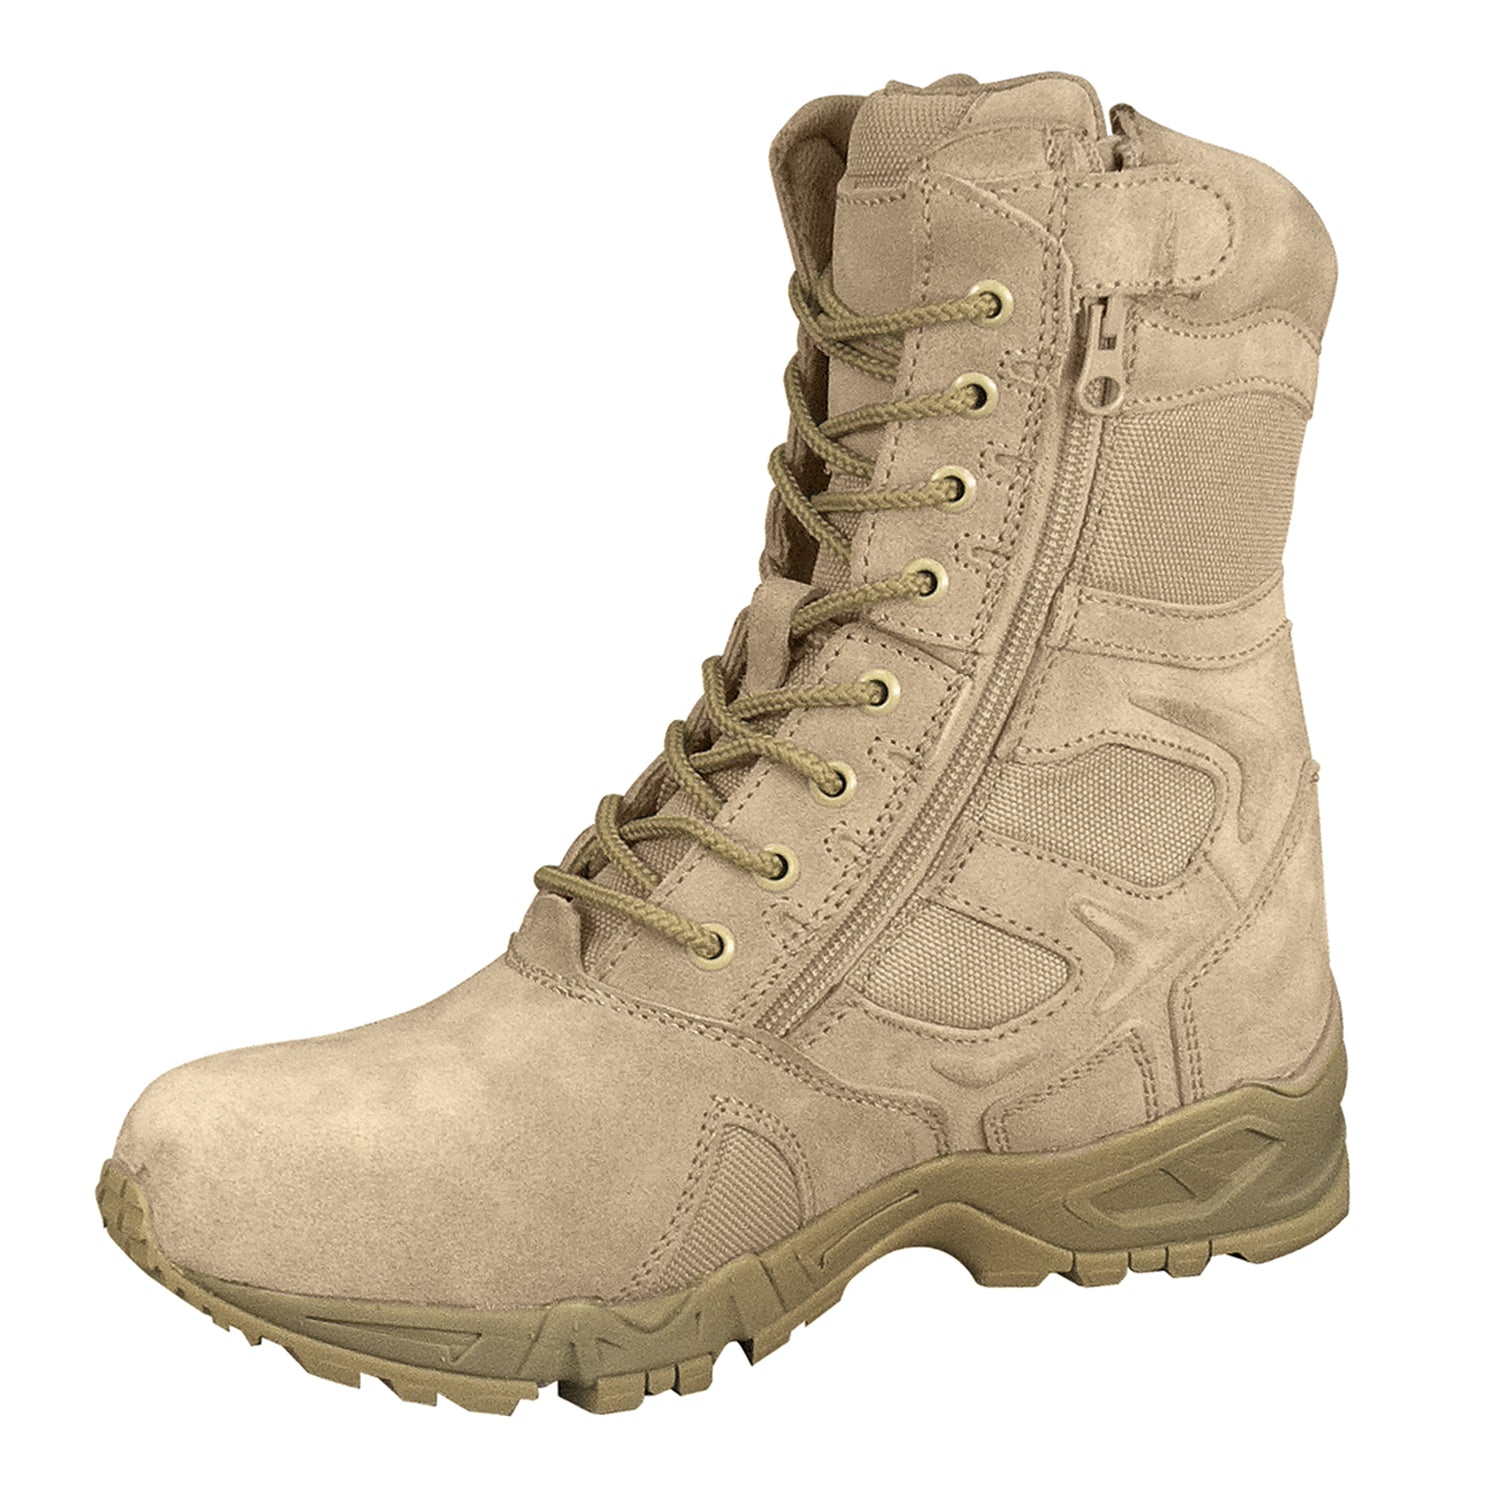 [AR 670-1][Zipper] Forced Entry Deployment Tactical Boots Desert Tan